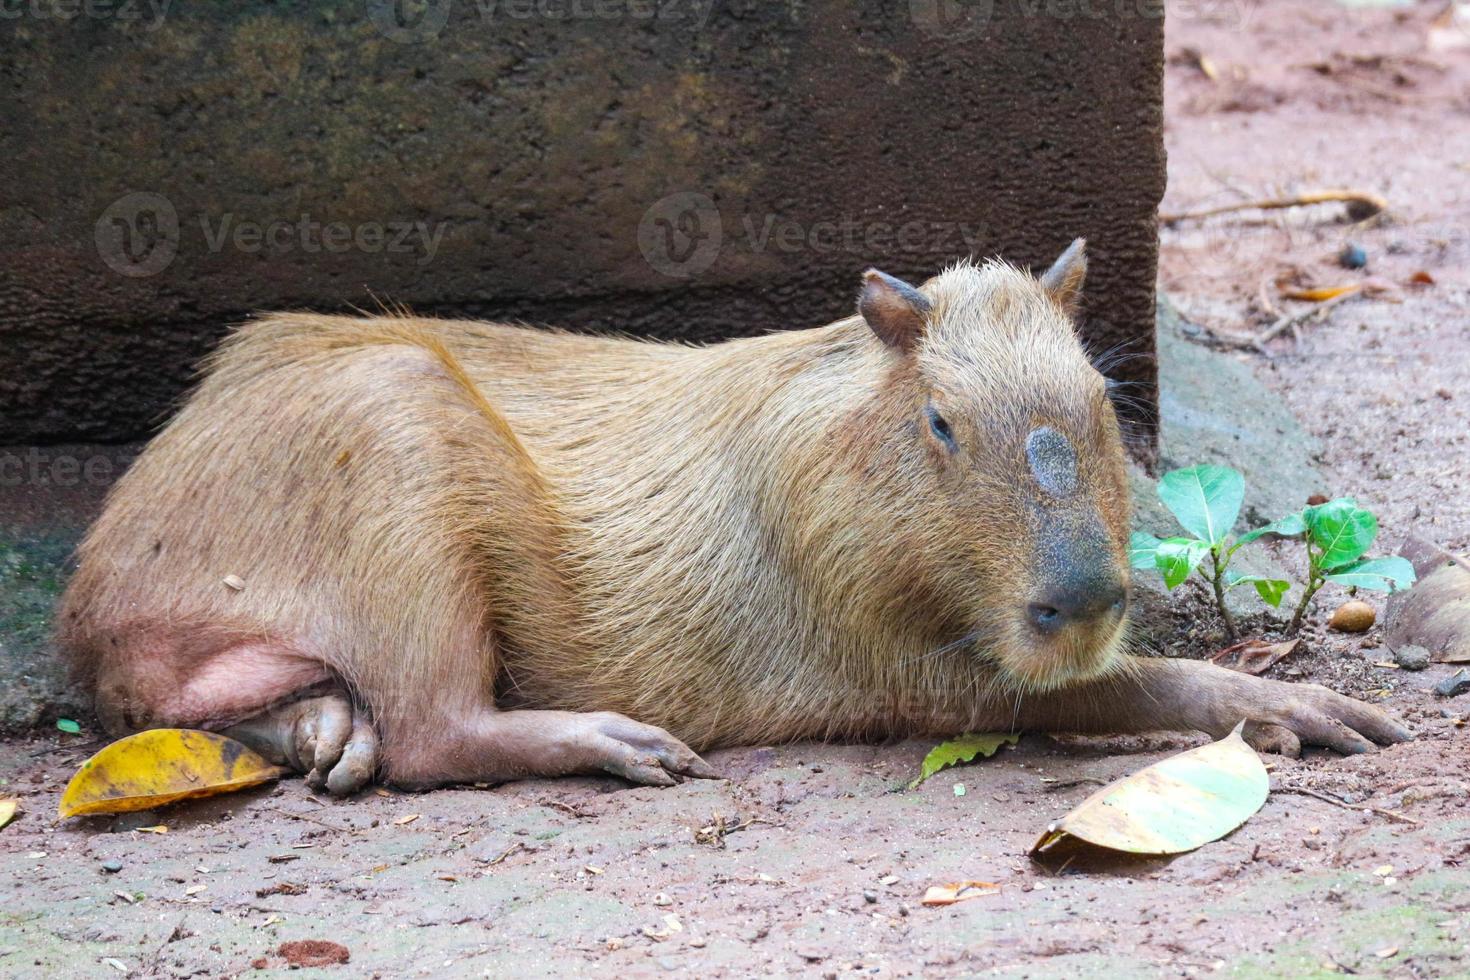 capybara hydrochoerus hydrochaeris au zoo de ragunan, jakarta. photo